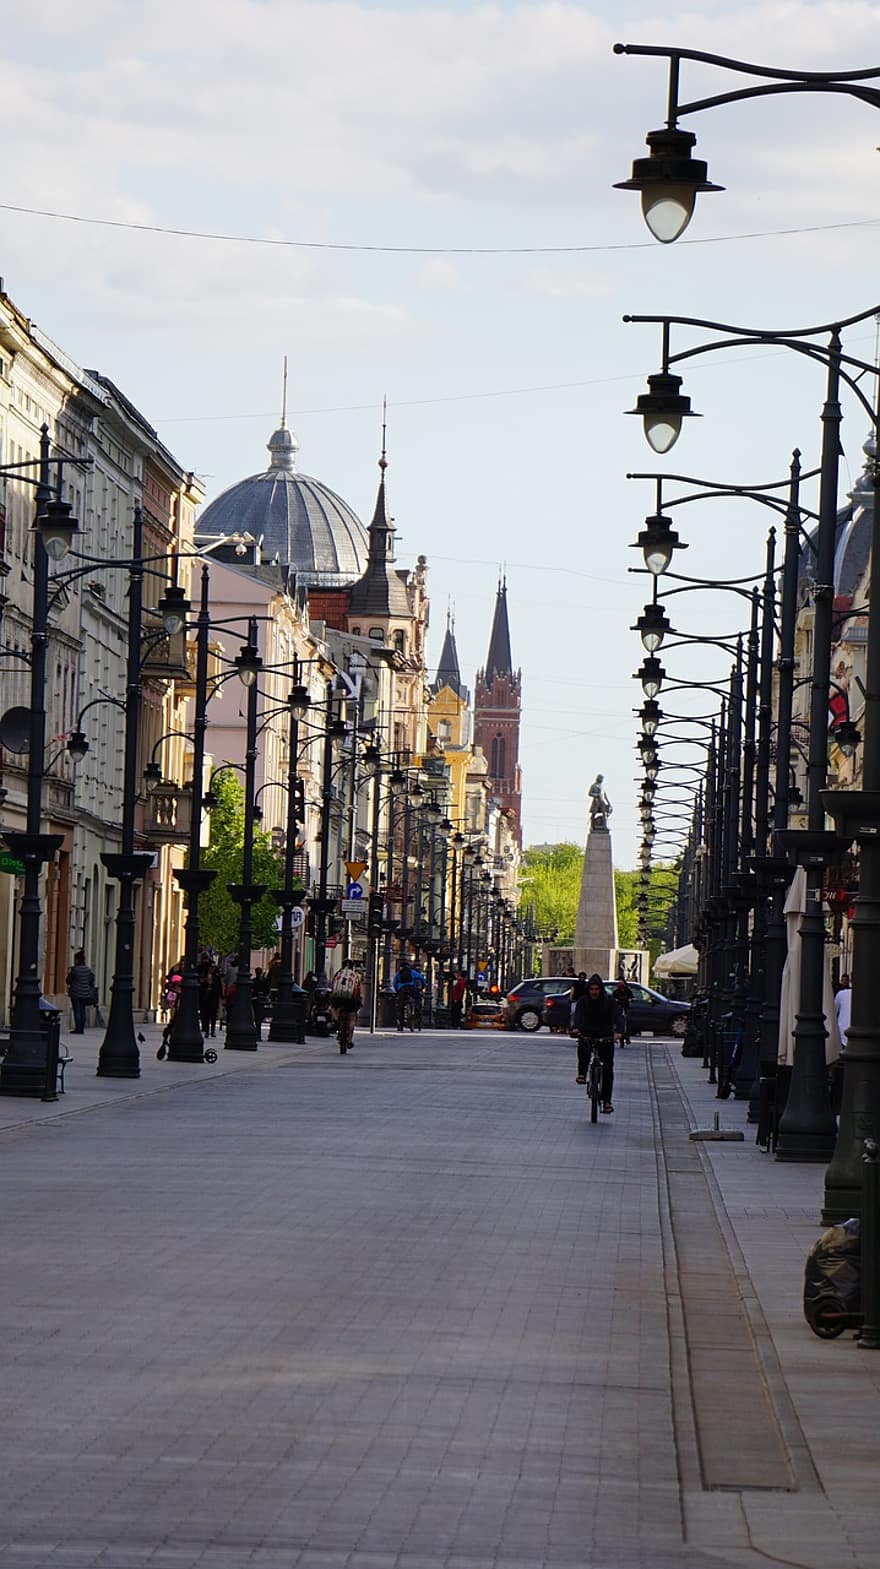 표트르코프스카, 거리, 시티, 가로등, 자전거 타는 사람, 사람들, 통근자, 거리 사진, 우치, 건물들, 건축물